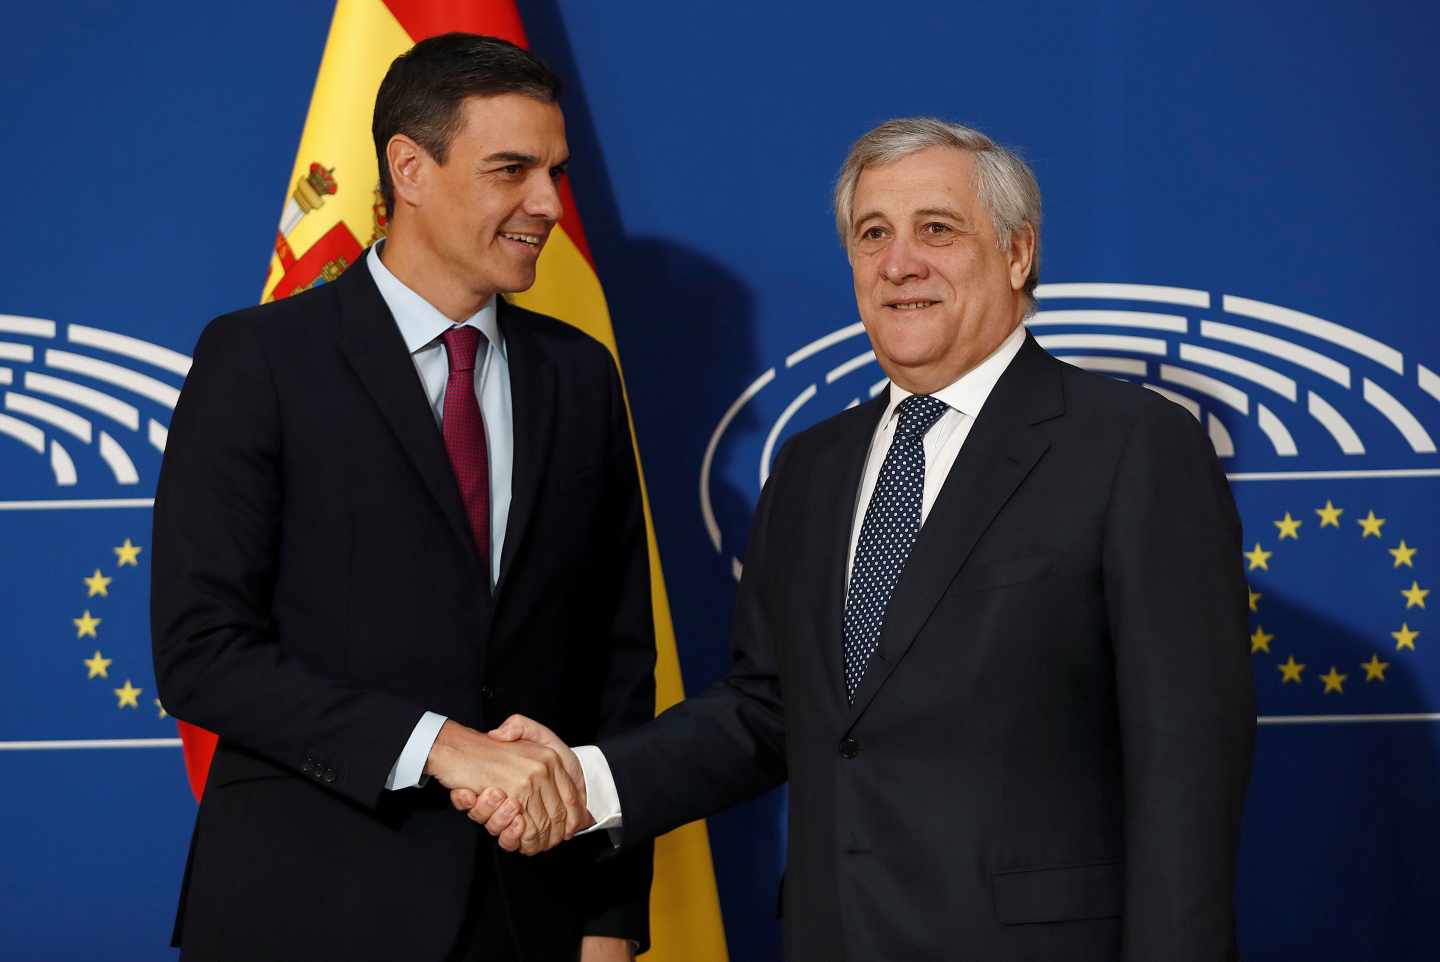 El presidente del Gobierno español, Pedro Sánchez saluda al presidente del Parlamento Europeo, Antonio Tajani.